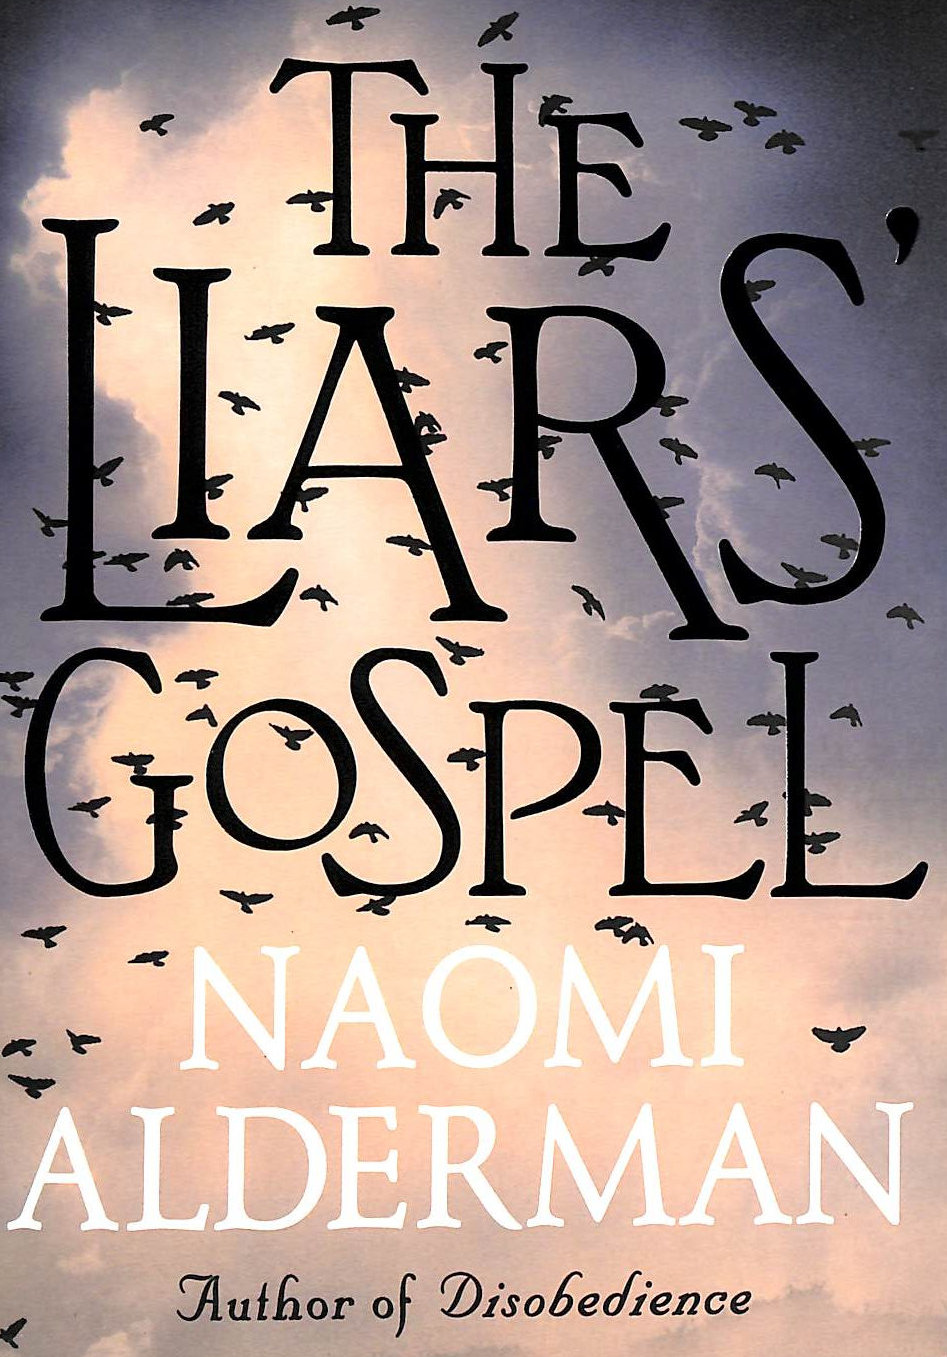 ALDERMAN, NAOMI - The Liars' Gospel